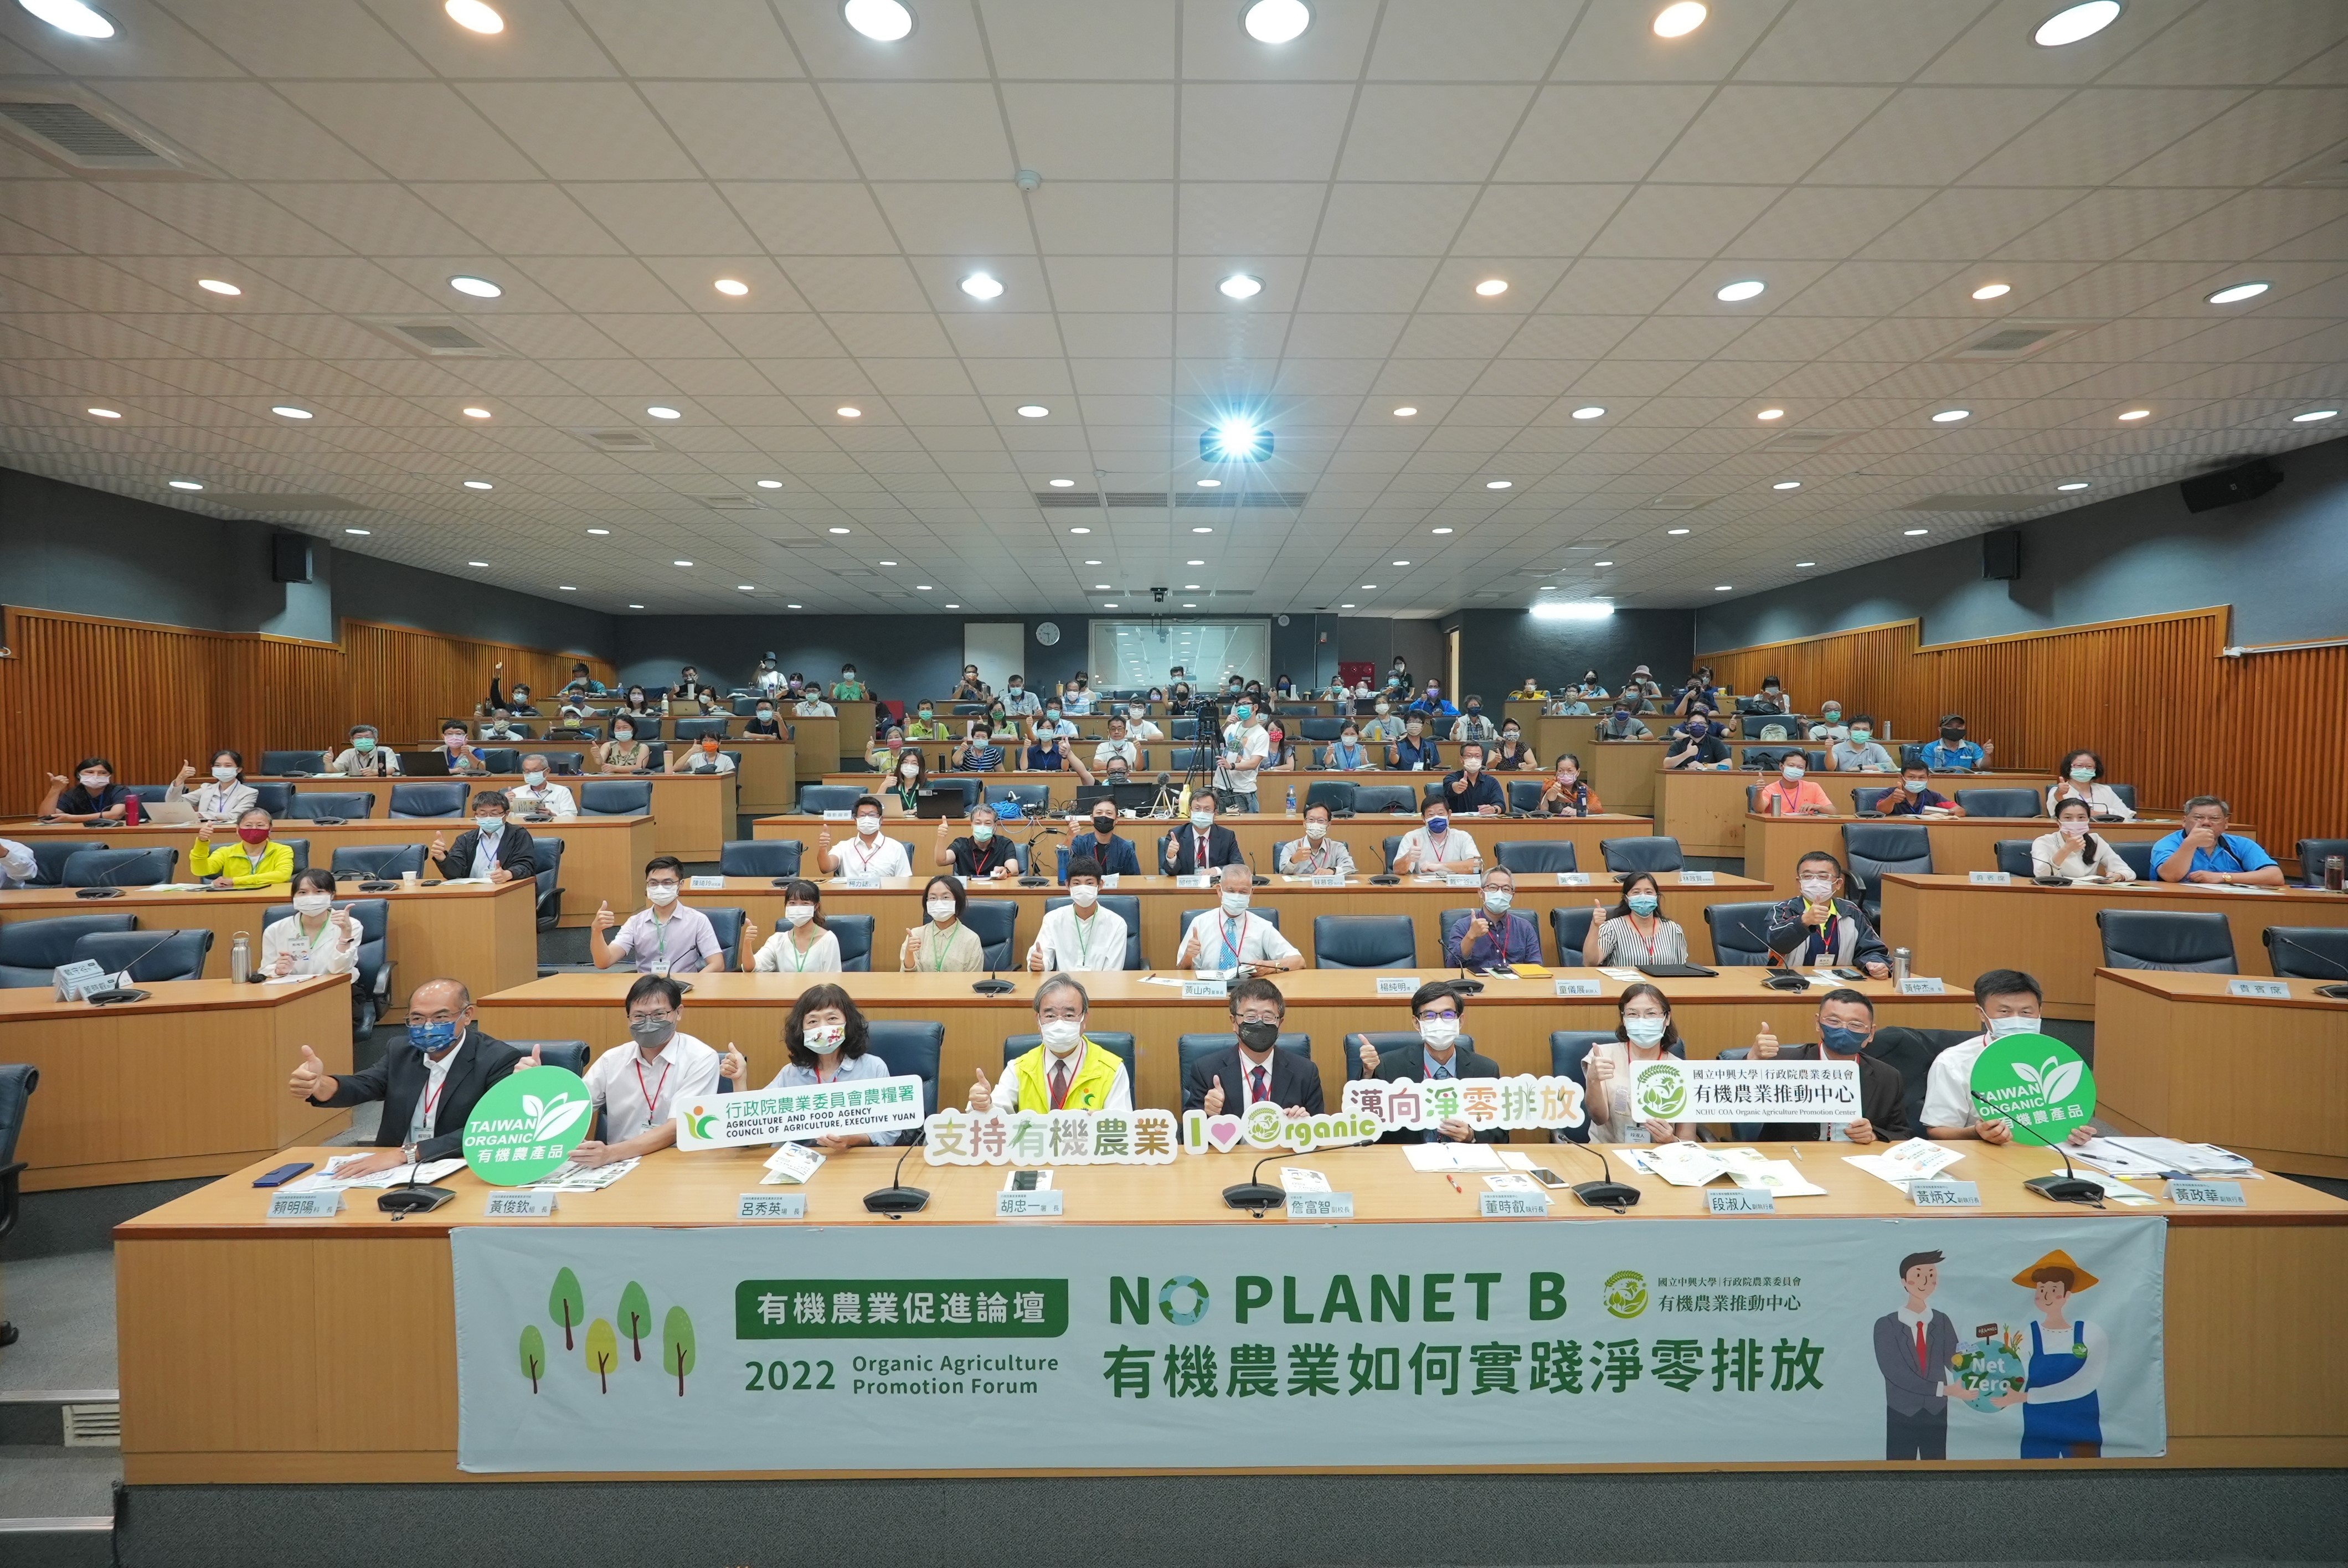 2022有機農業促進論壇「No_Planet_B-有機農業如何實踐農業淨零排放」現場合照